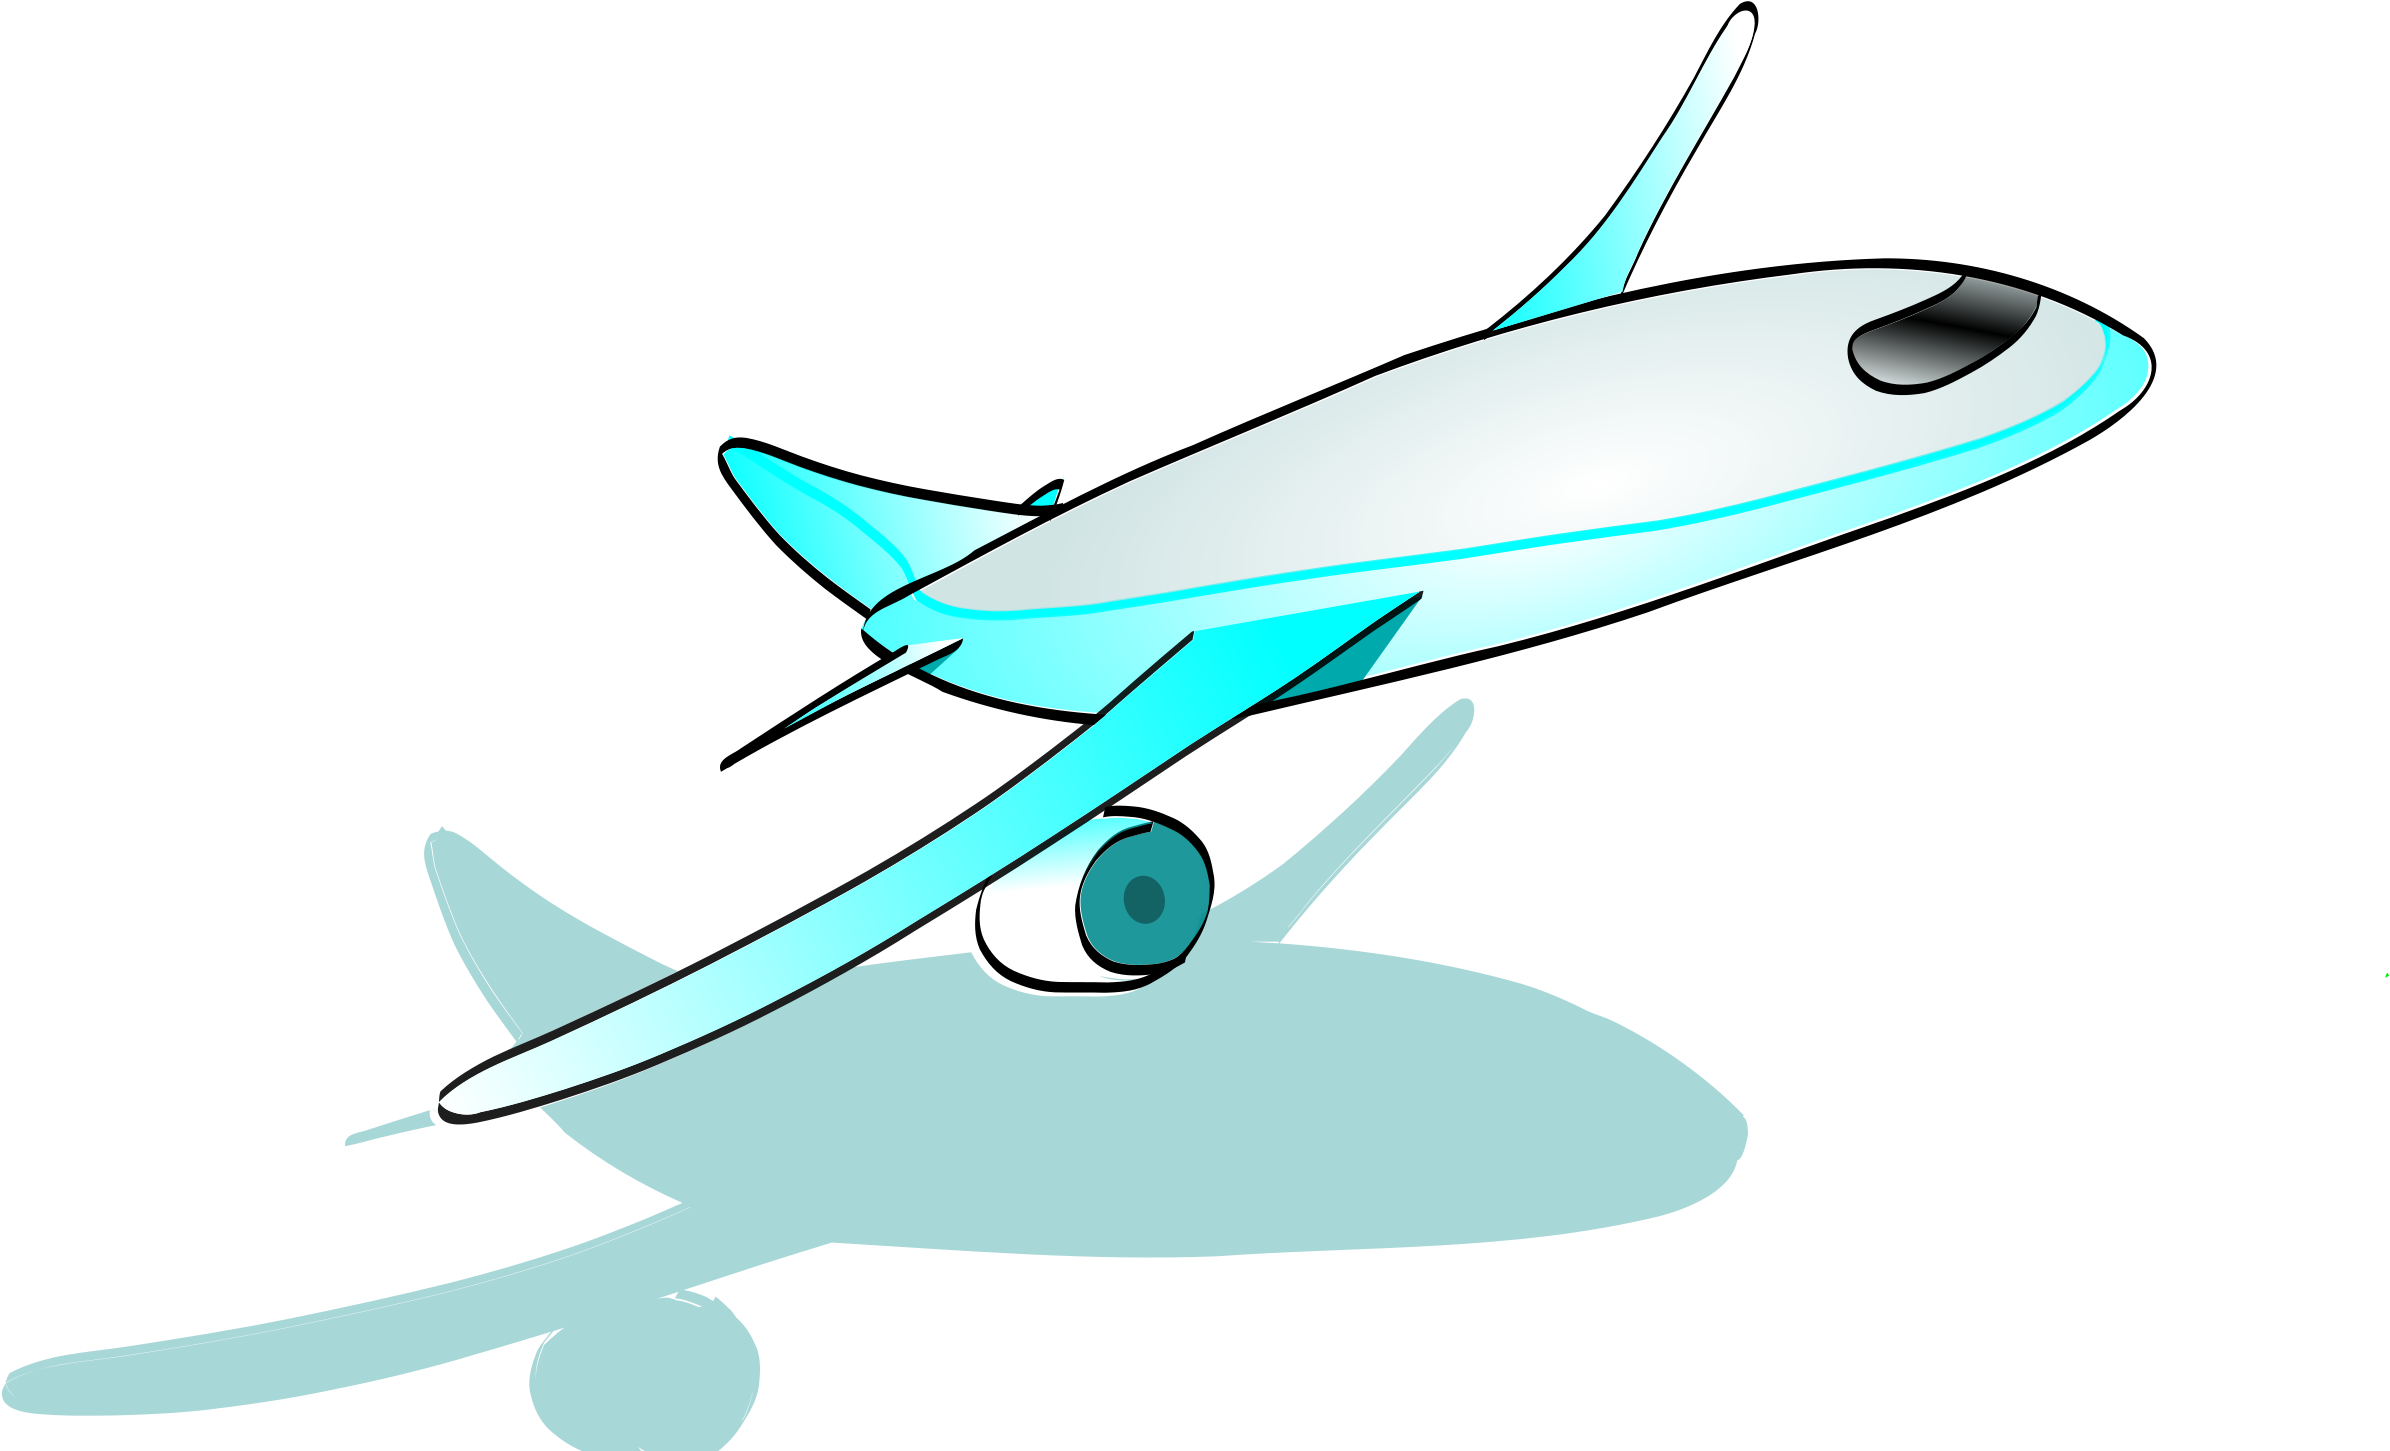 Imagen Transparente de dibujos animados de avión